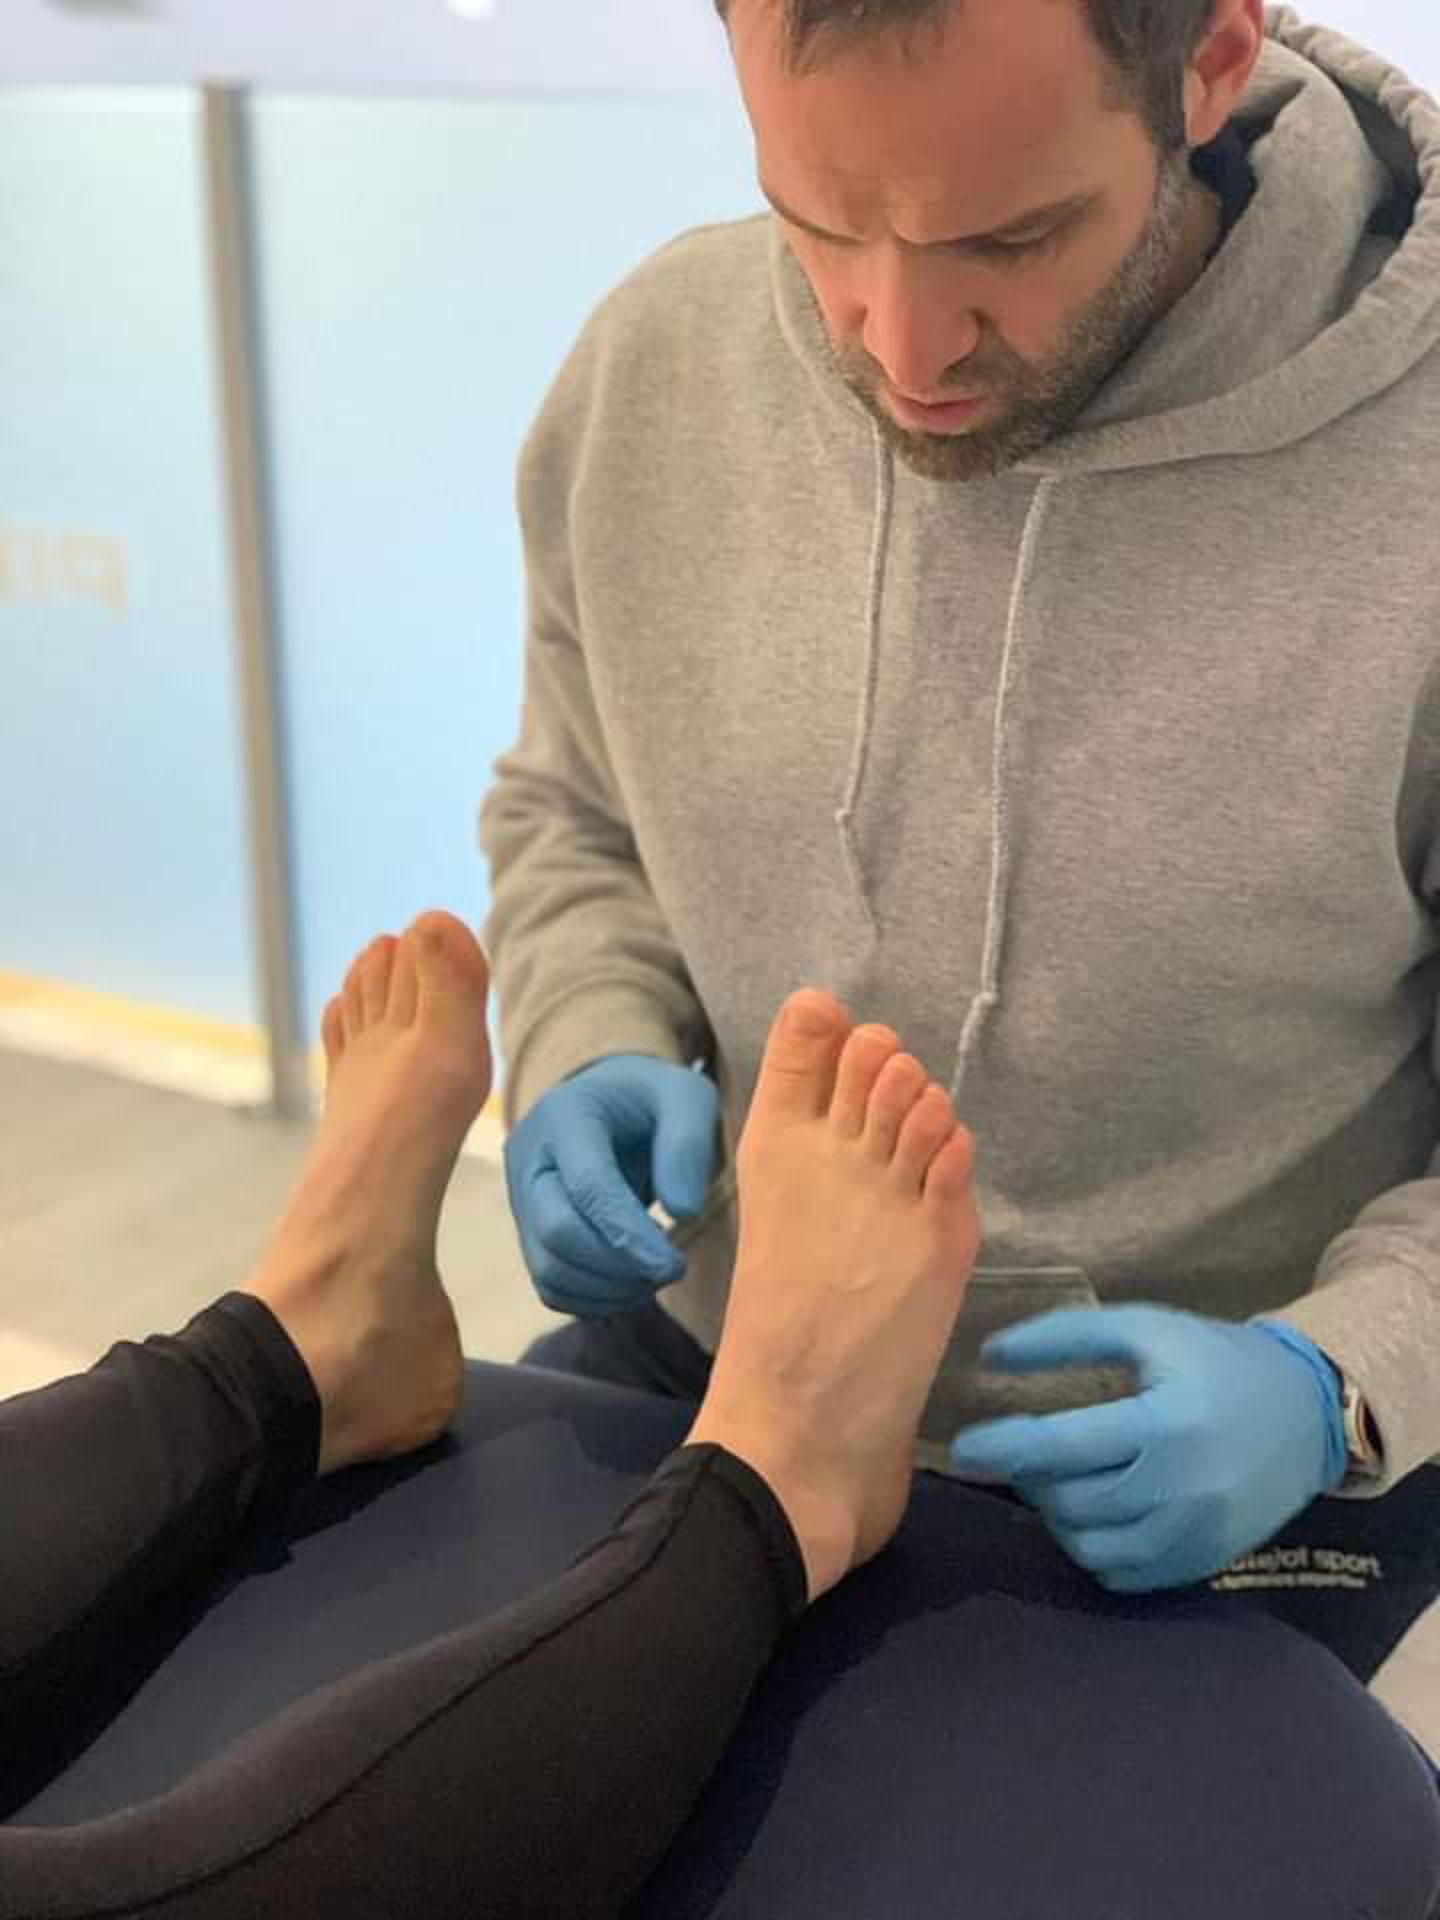 James Cruickshank inspects the feet of a client